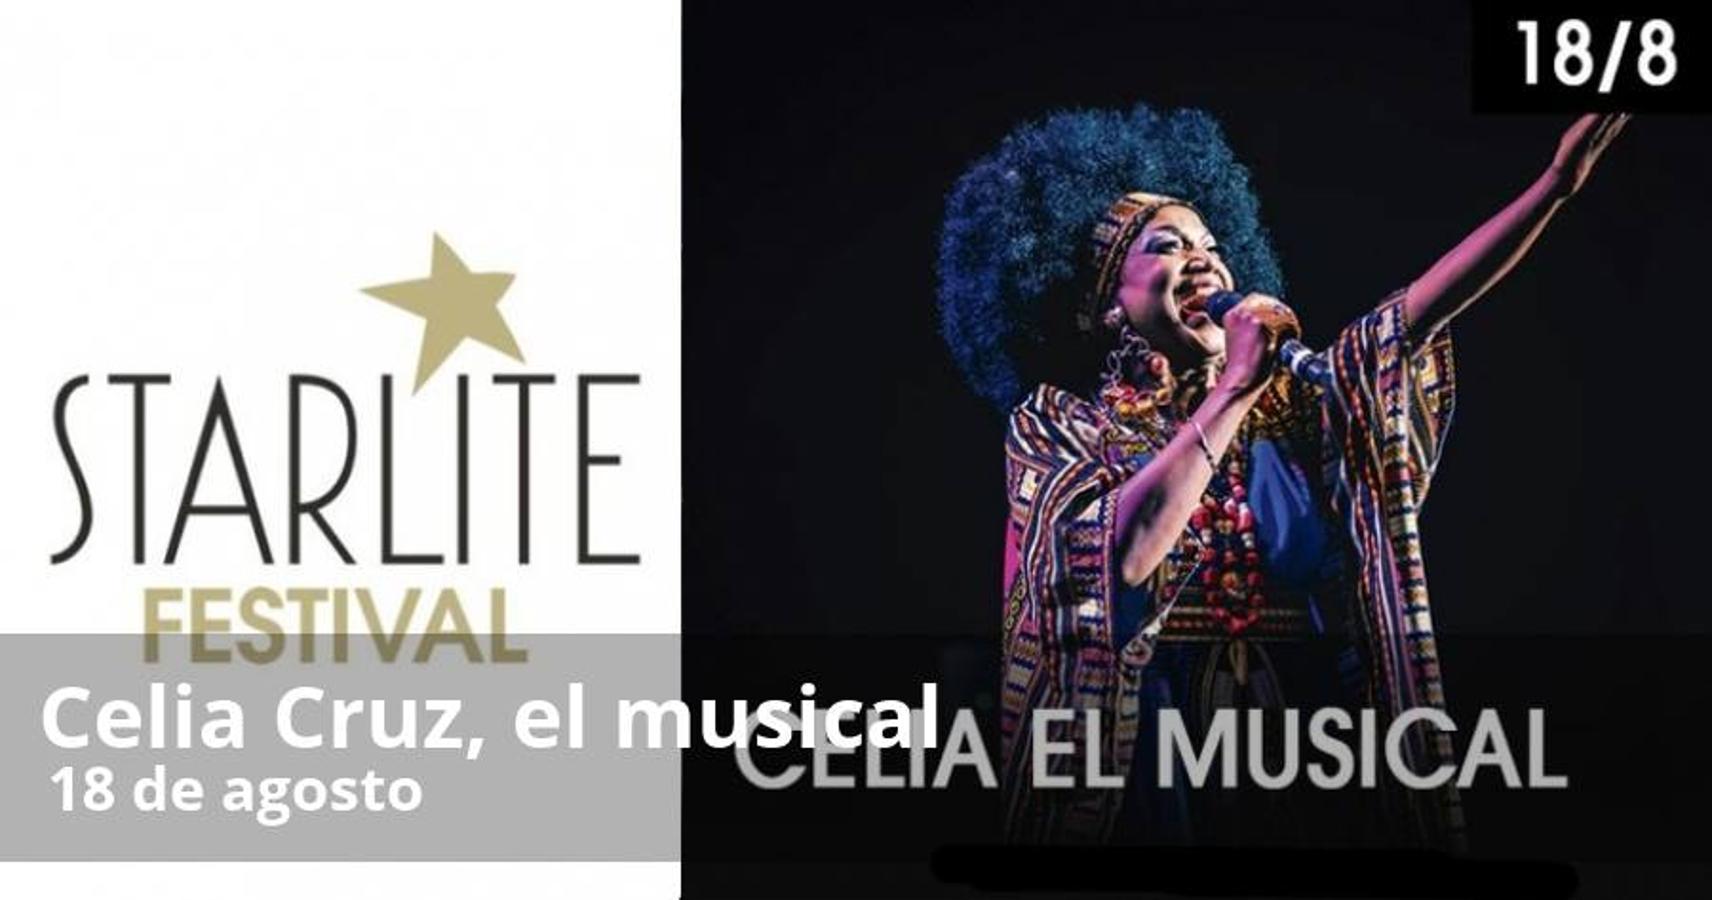 La música latina será la gran protagonista en la edición del Starlite 2018, pero el festival de Marbella ofrece este año un amplio programa de actuaciones para todos los gustos con artistas de renombre internacional. 